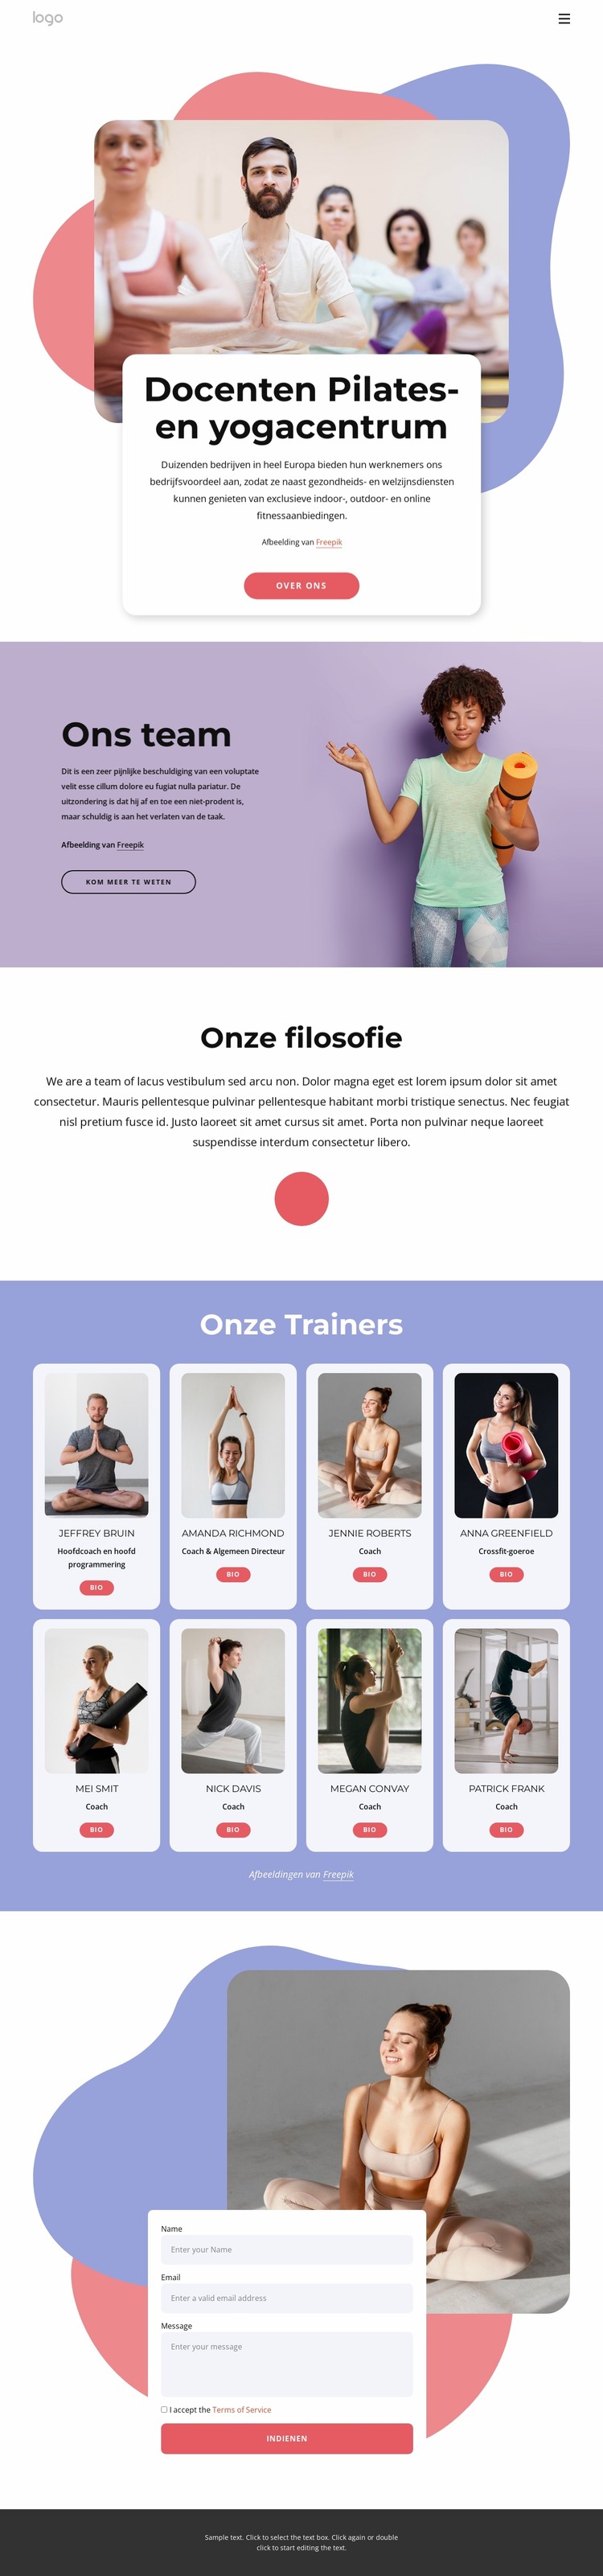 Docenten Pilates- en yogacentrum Joomla-sjabloon